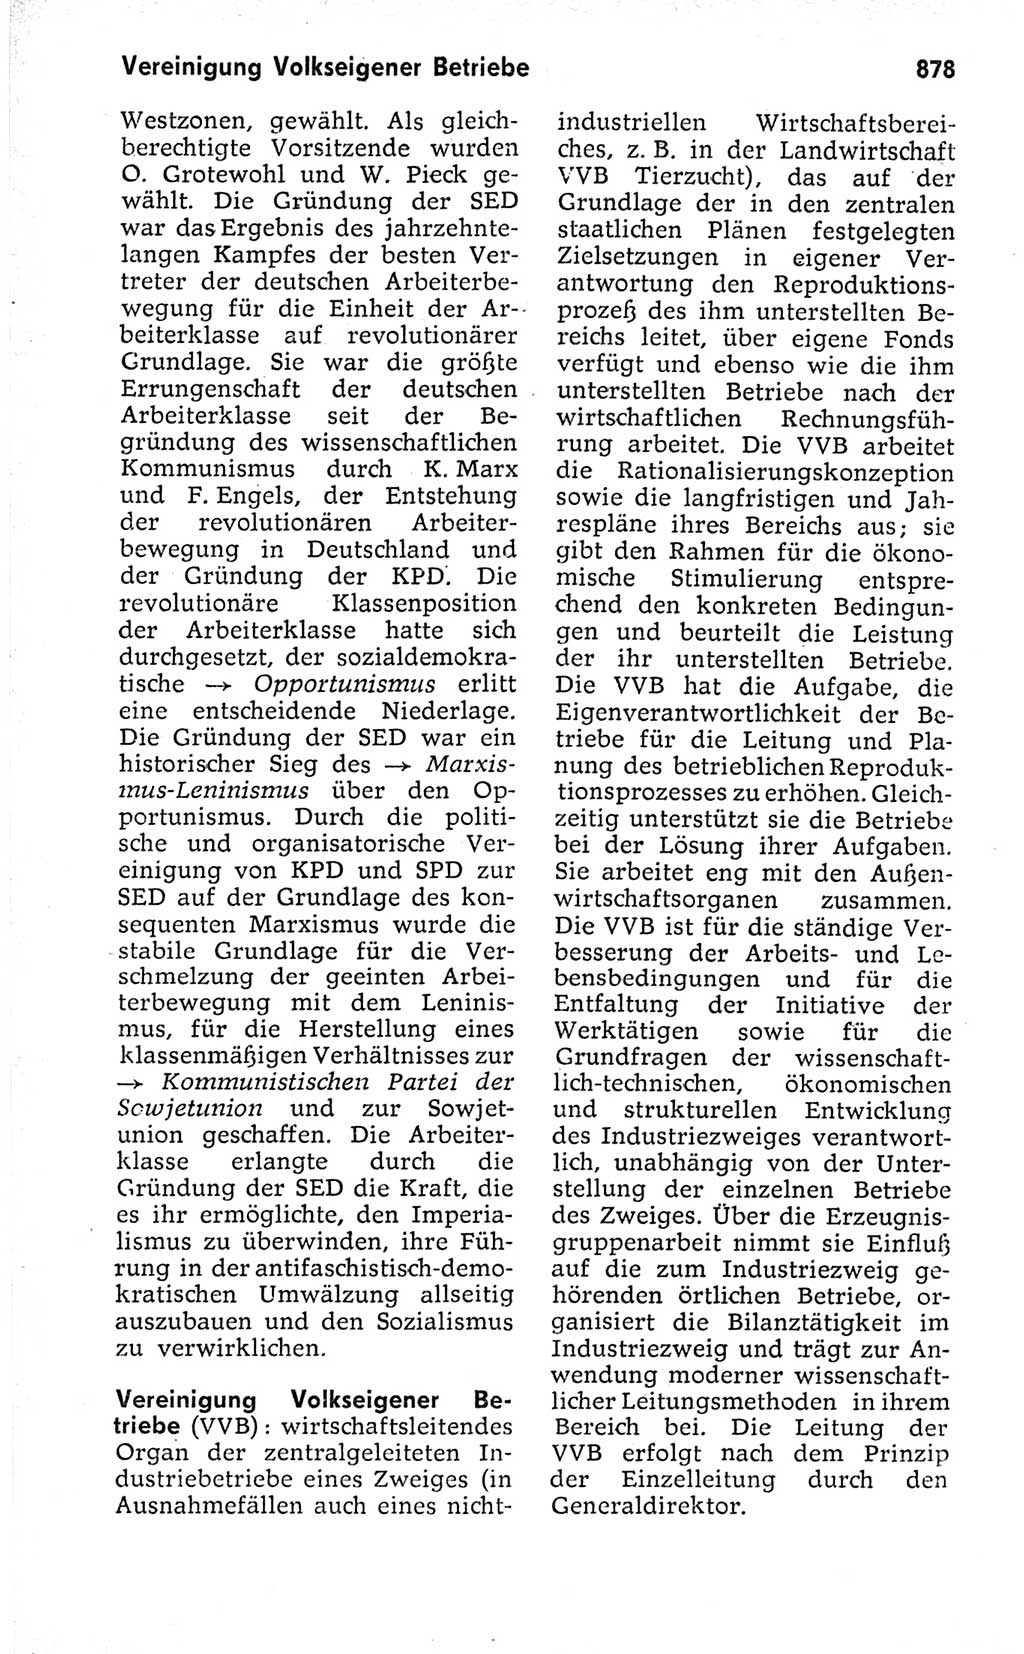 Kleines politisches Wörterbuch [Deutsche Demokratische Republik (DDR)] 1973, Seite 878 (Kl. pol. Wb. DDR 1973, S. 878)